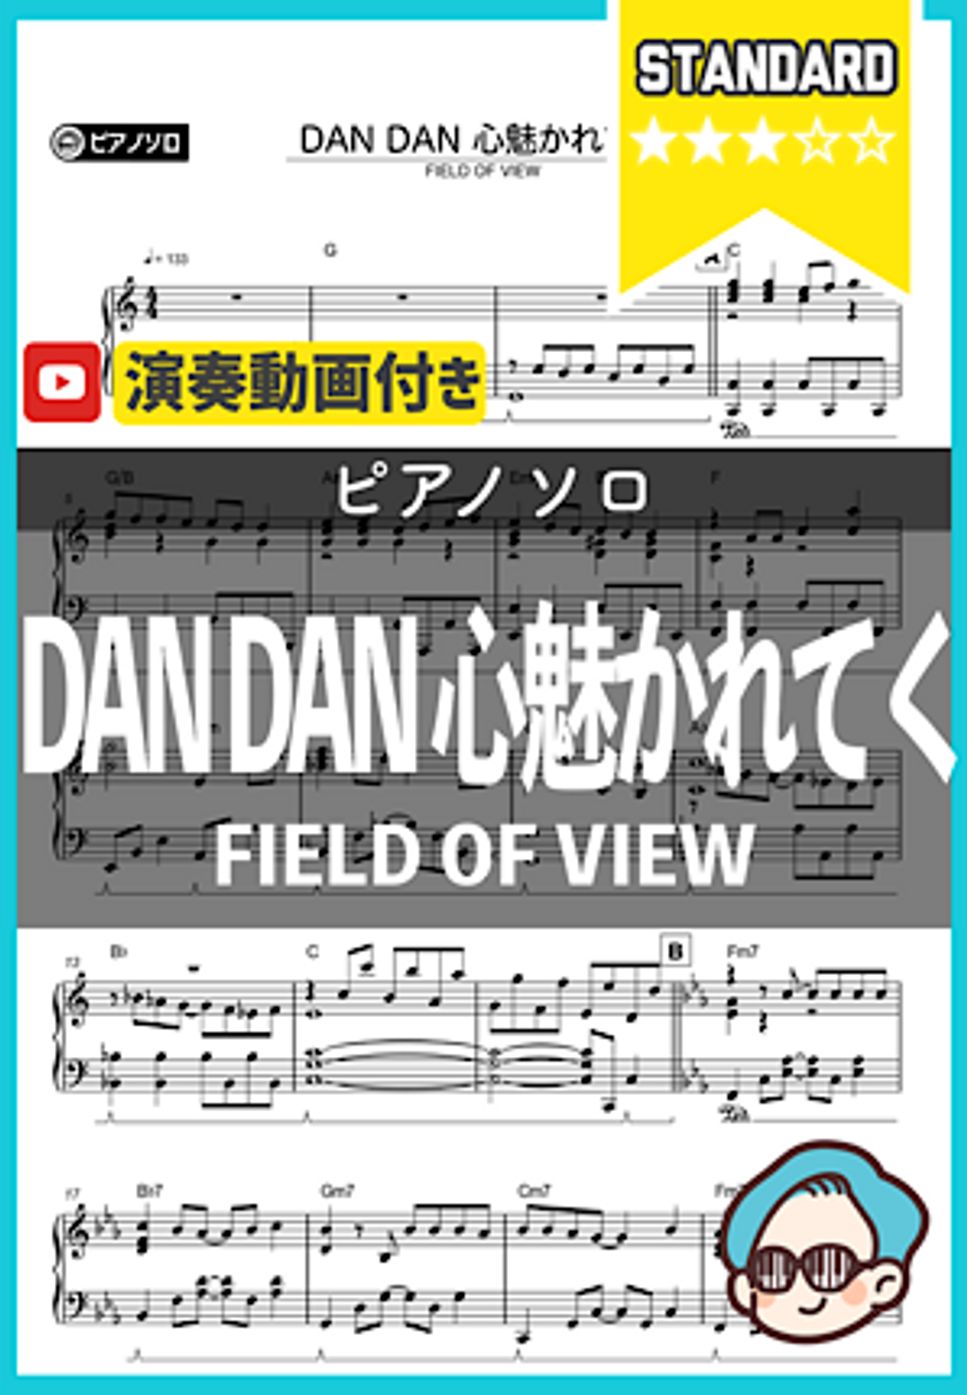 FIELD OF VIEW - DAN DAN 心魅かれてく by シータピアノ